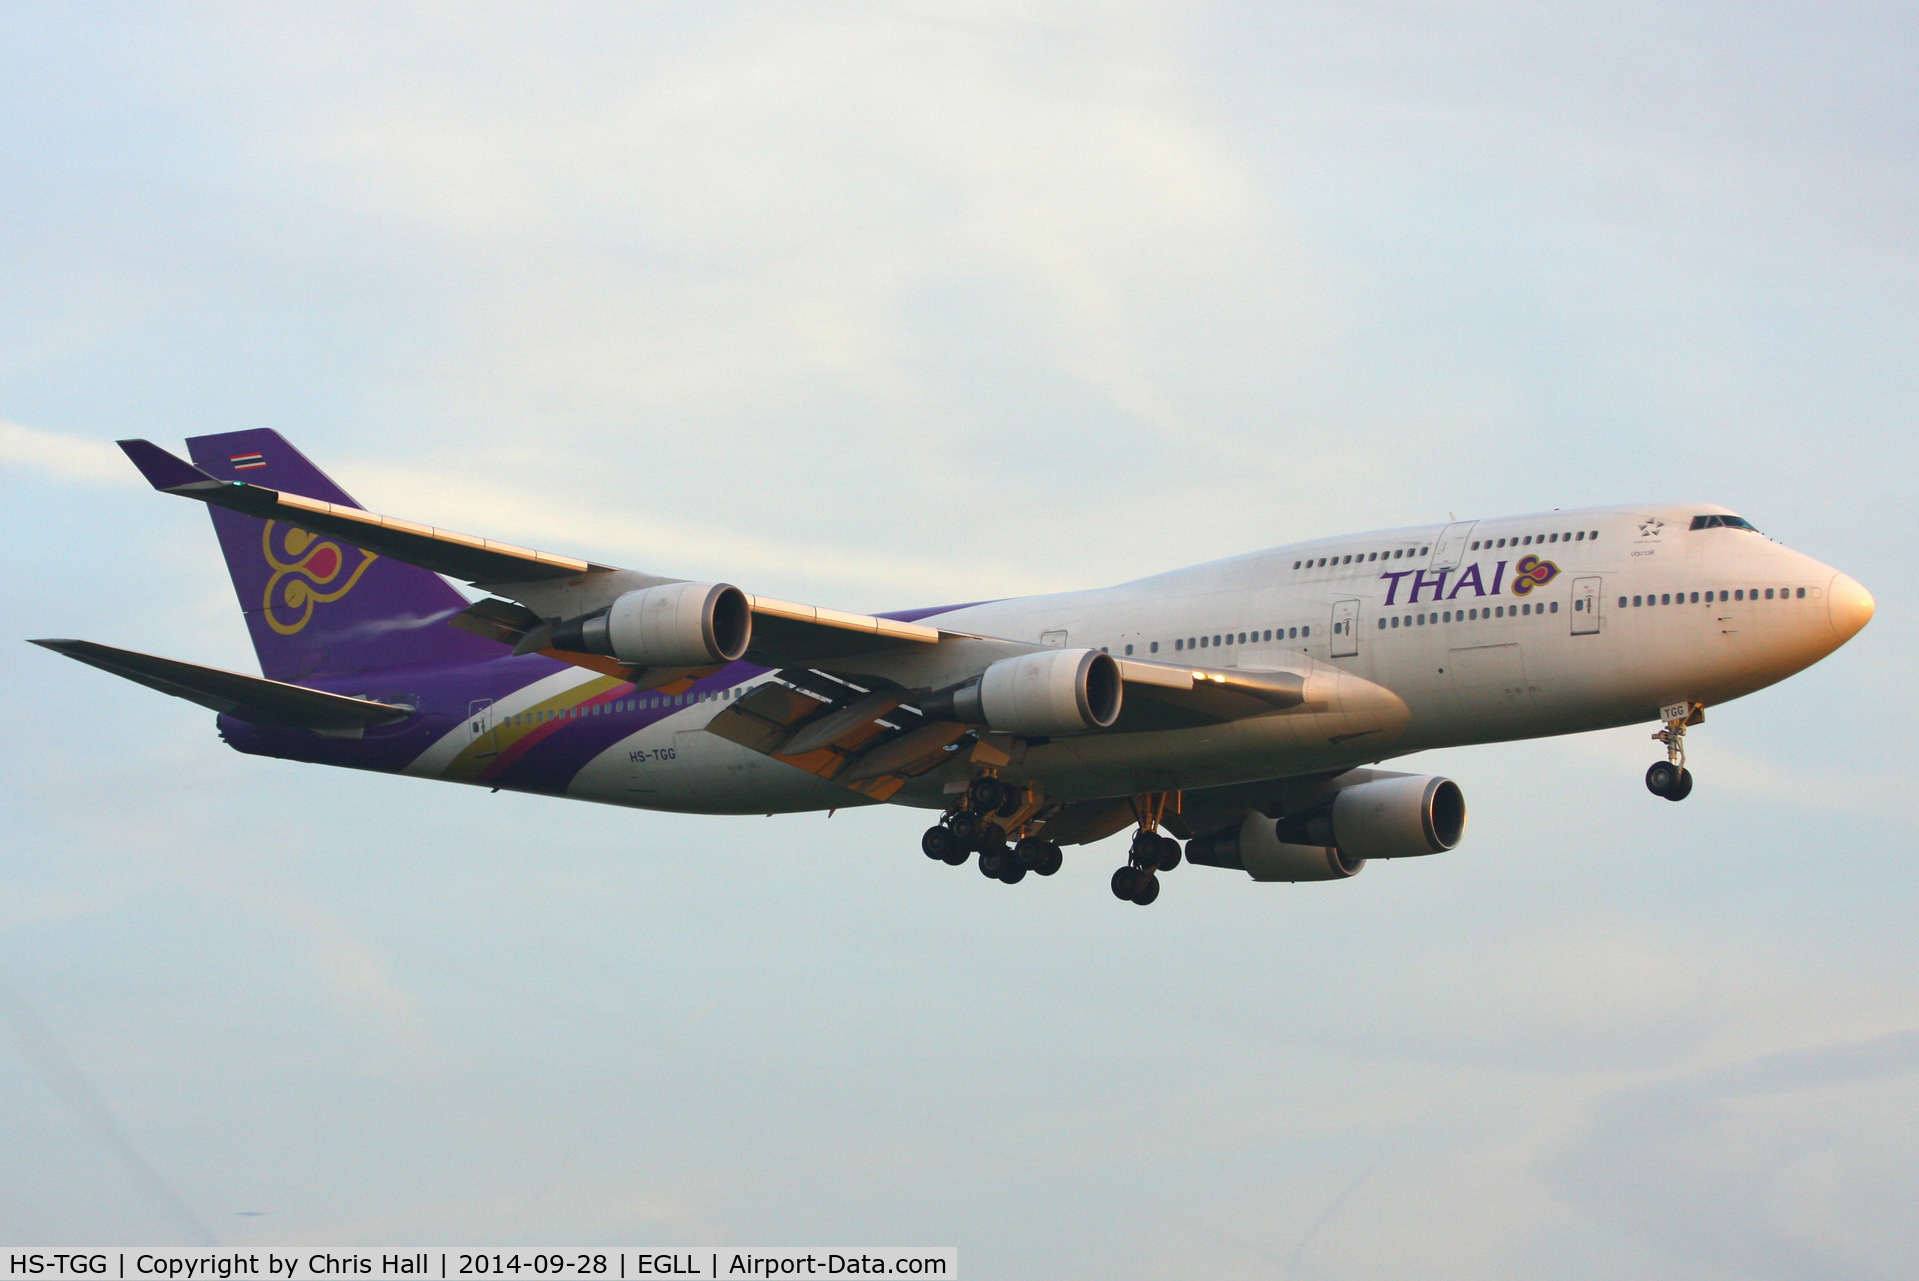 HS-TGG, 2003 Boeing 747-4D7 C/N 33771, Thai Airways International